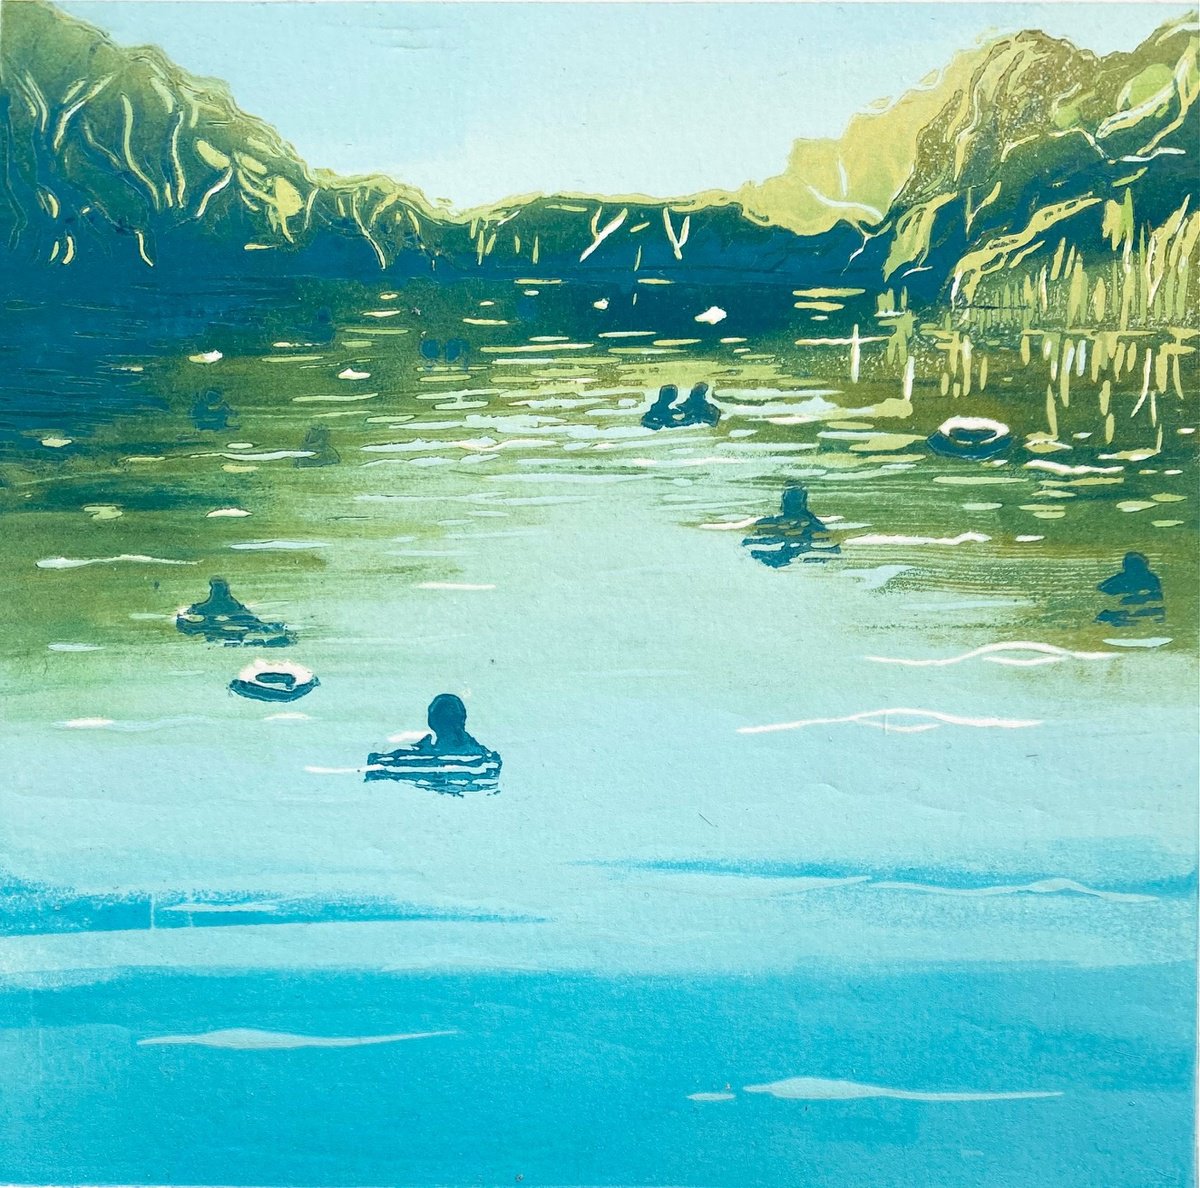 Ladies Pond, Summer by Rebecca Denton